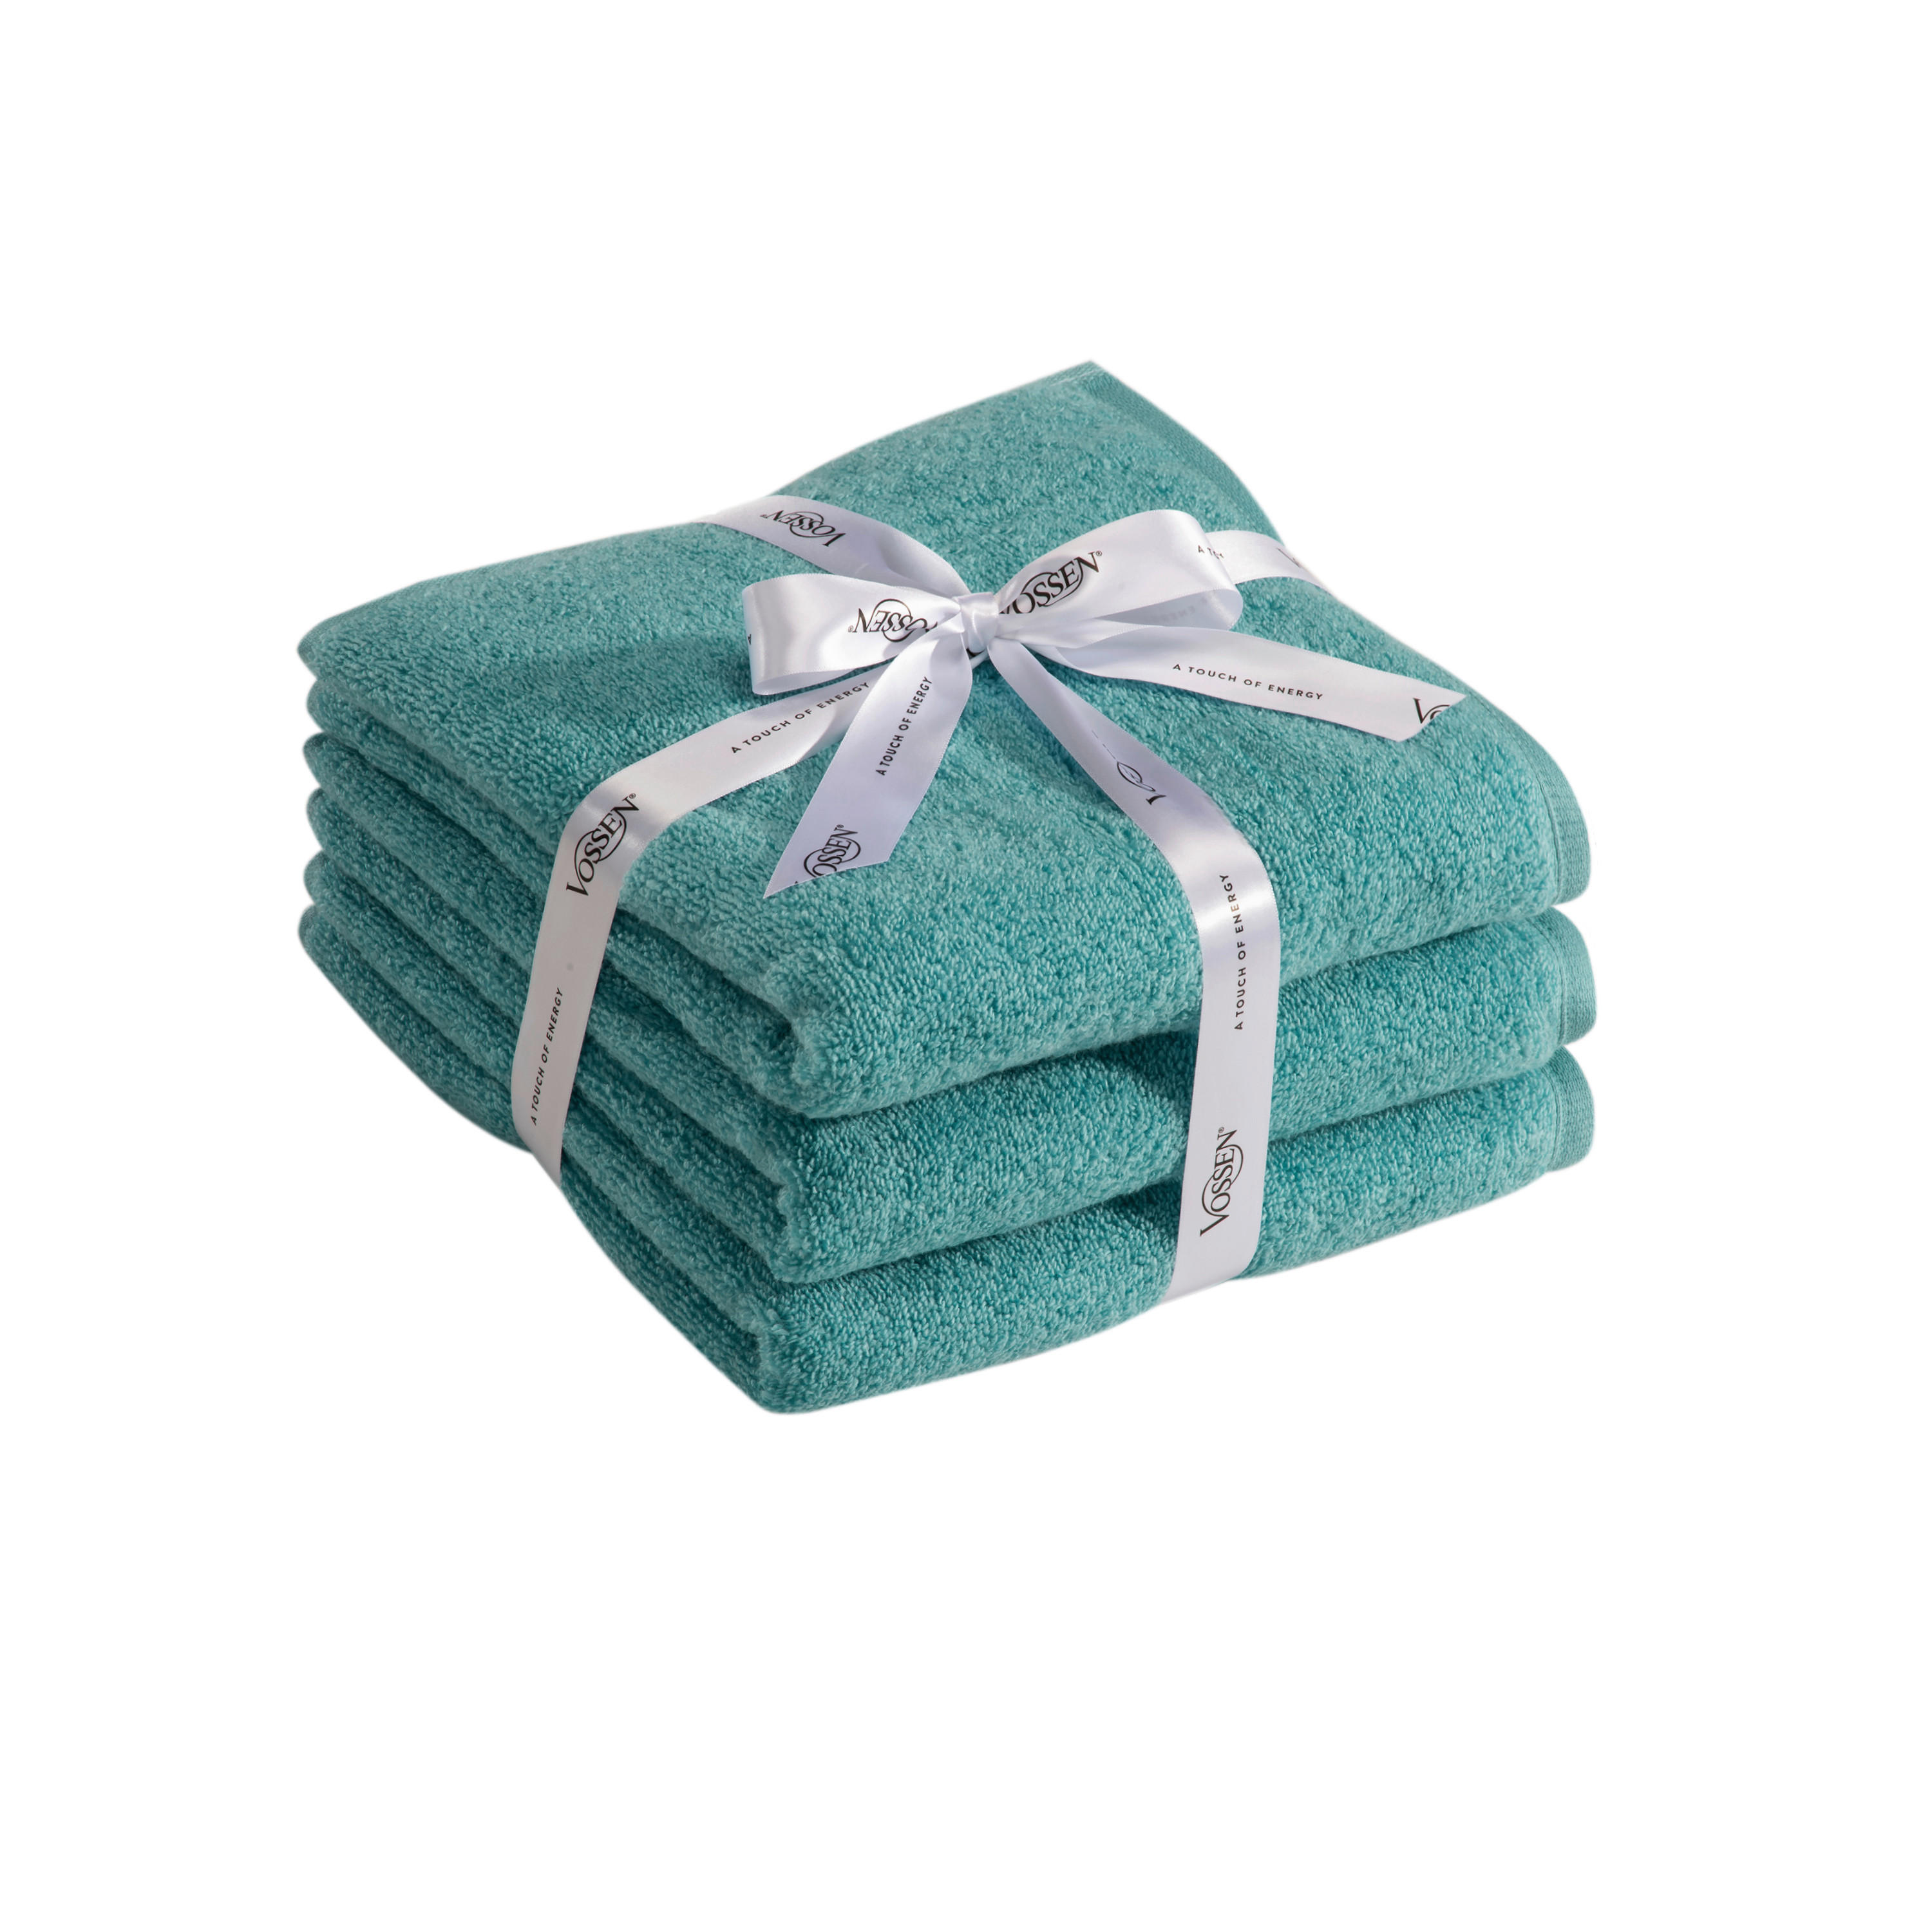 HANDTUCH Smart Towel  - Türkis, Basics, Textil (50/100cm) - Vossen